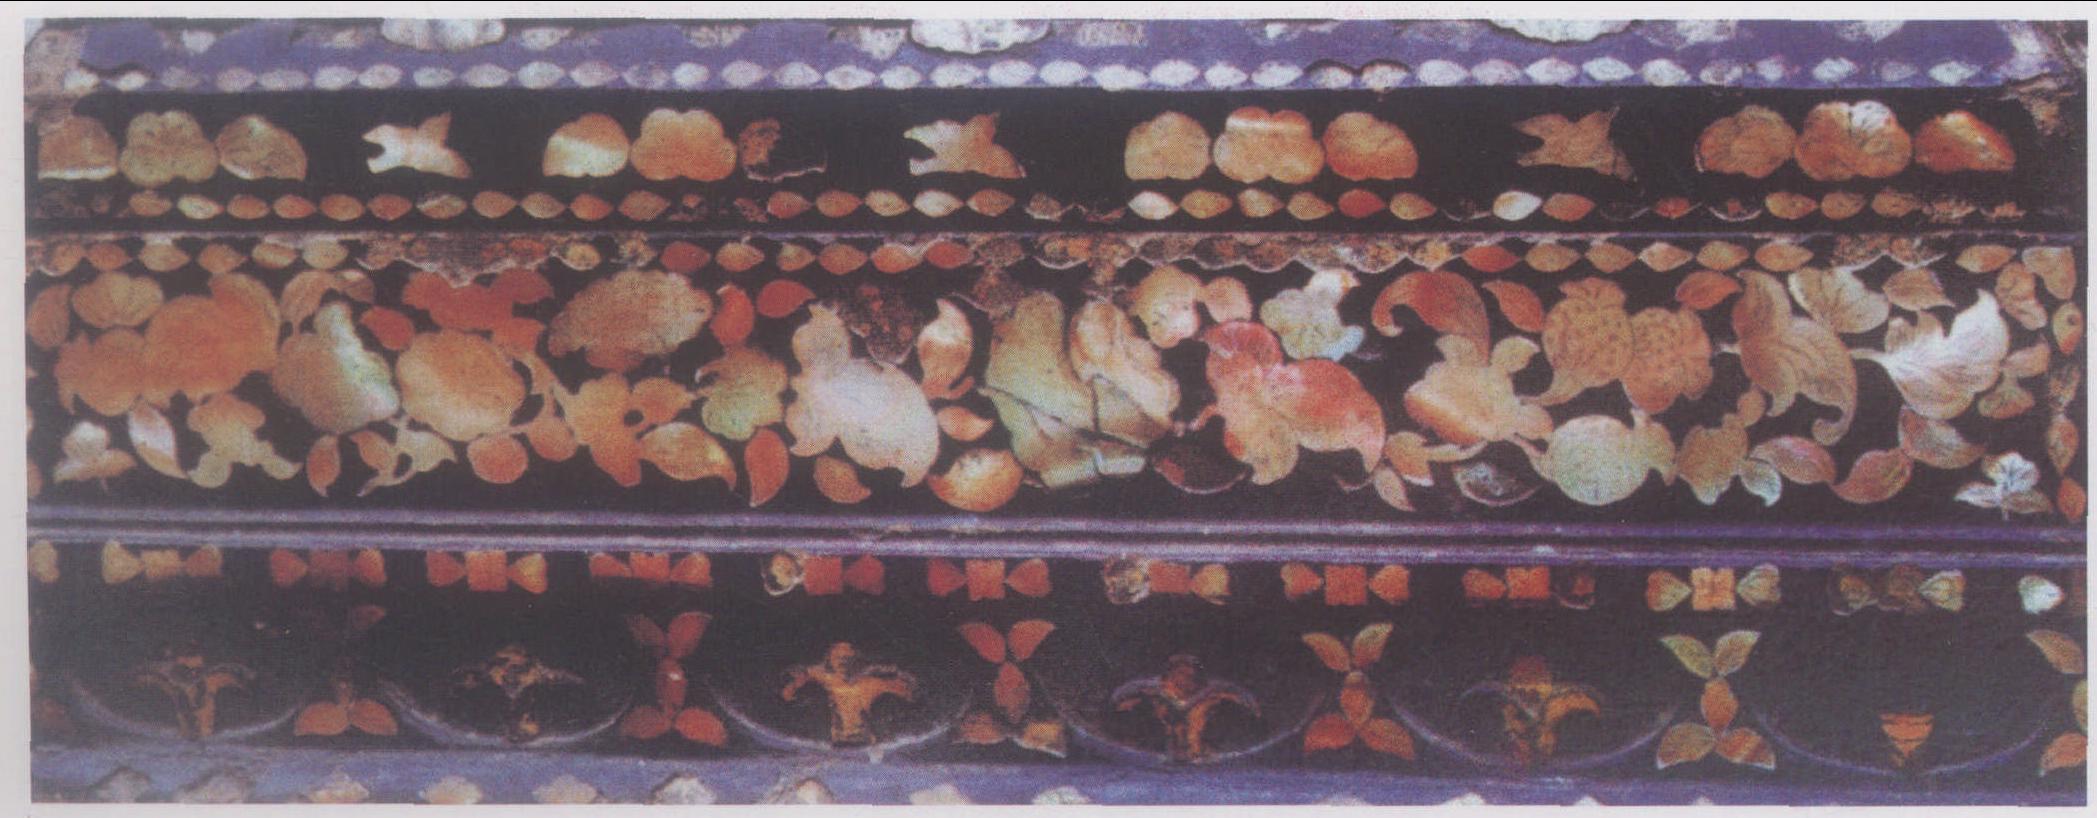 6 苏州瑞光塔发现的五代嵌螺钿黑漆经箱上的花边纹样